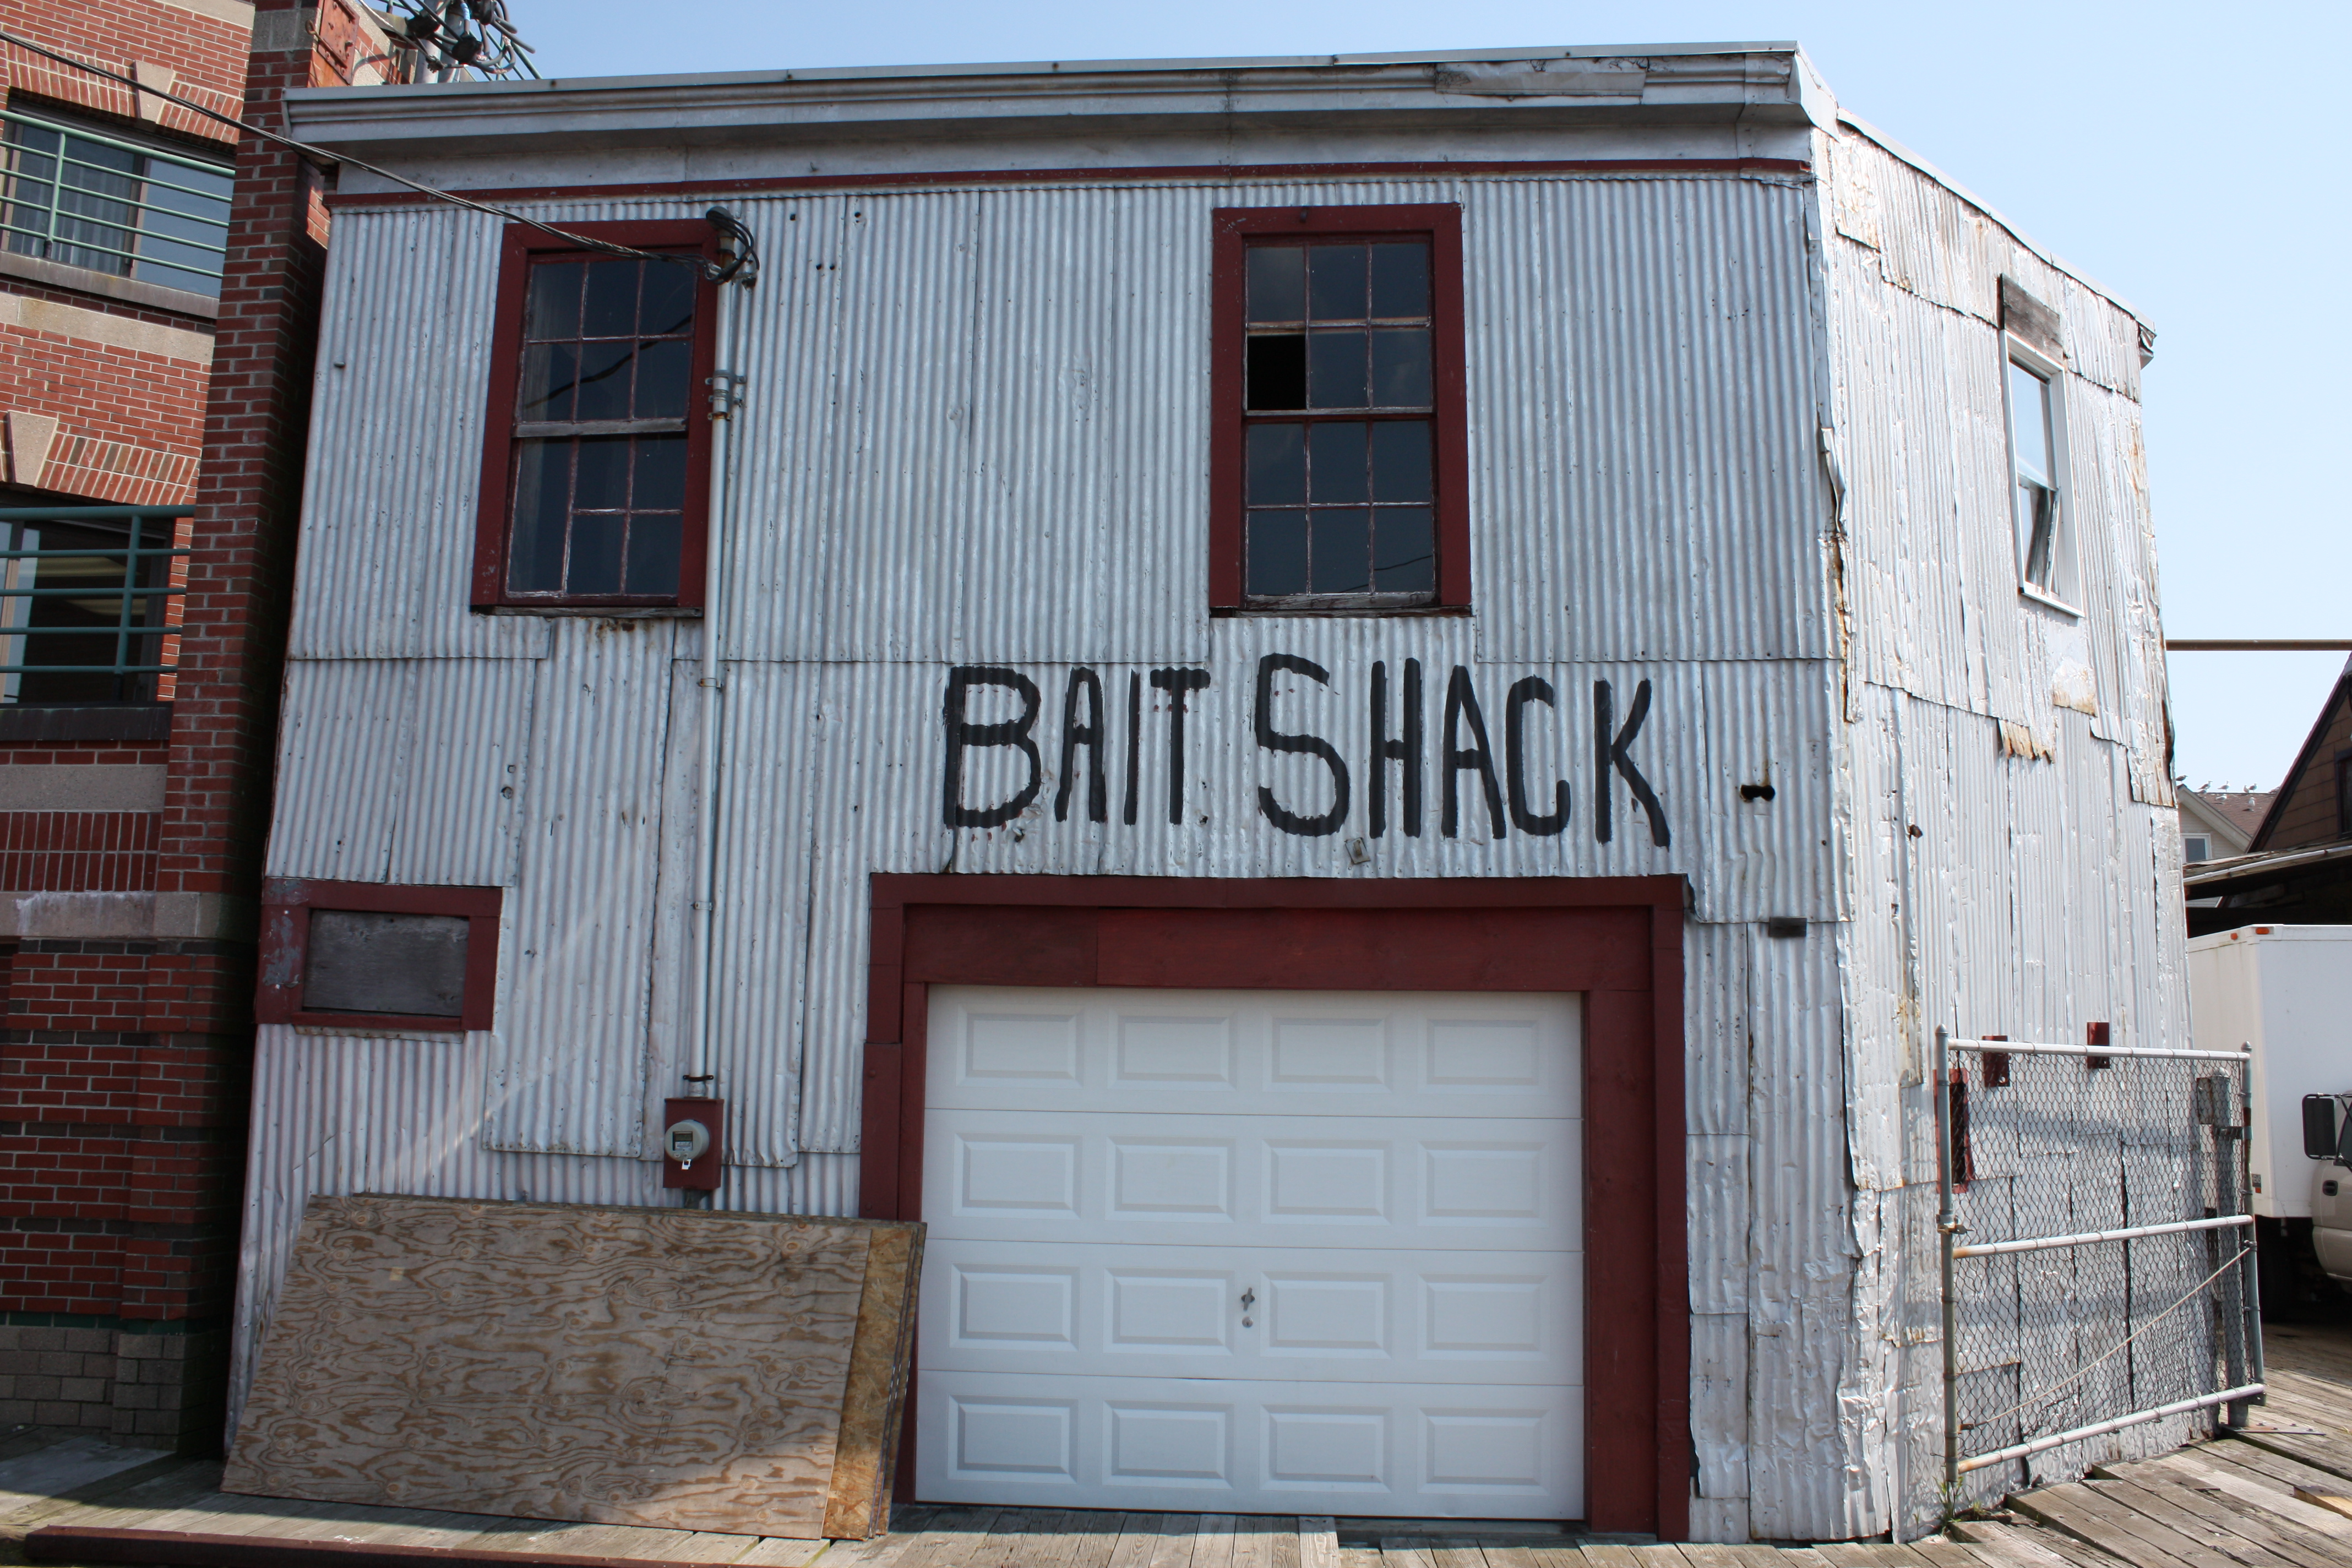 bait shack, portland, maine | gourmet ghetto